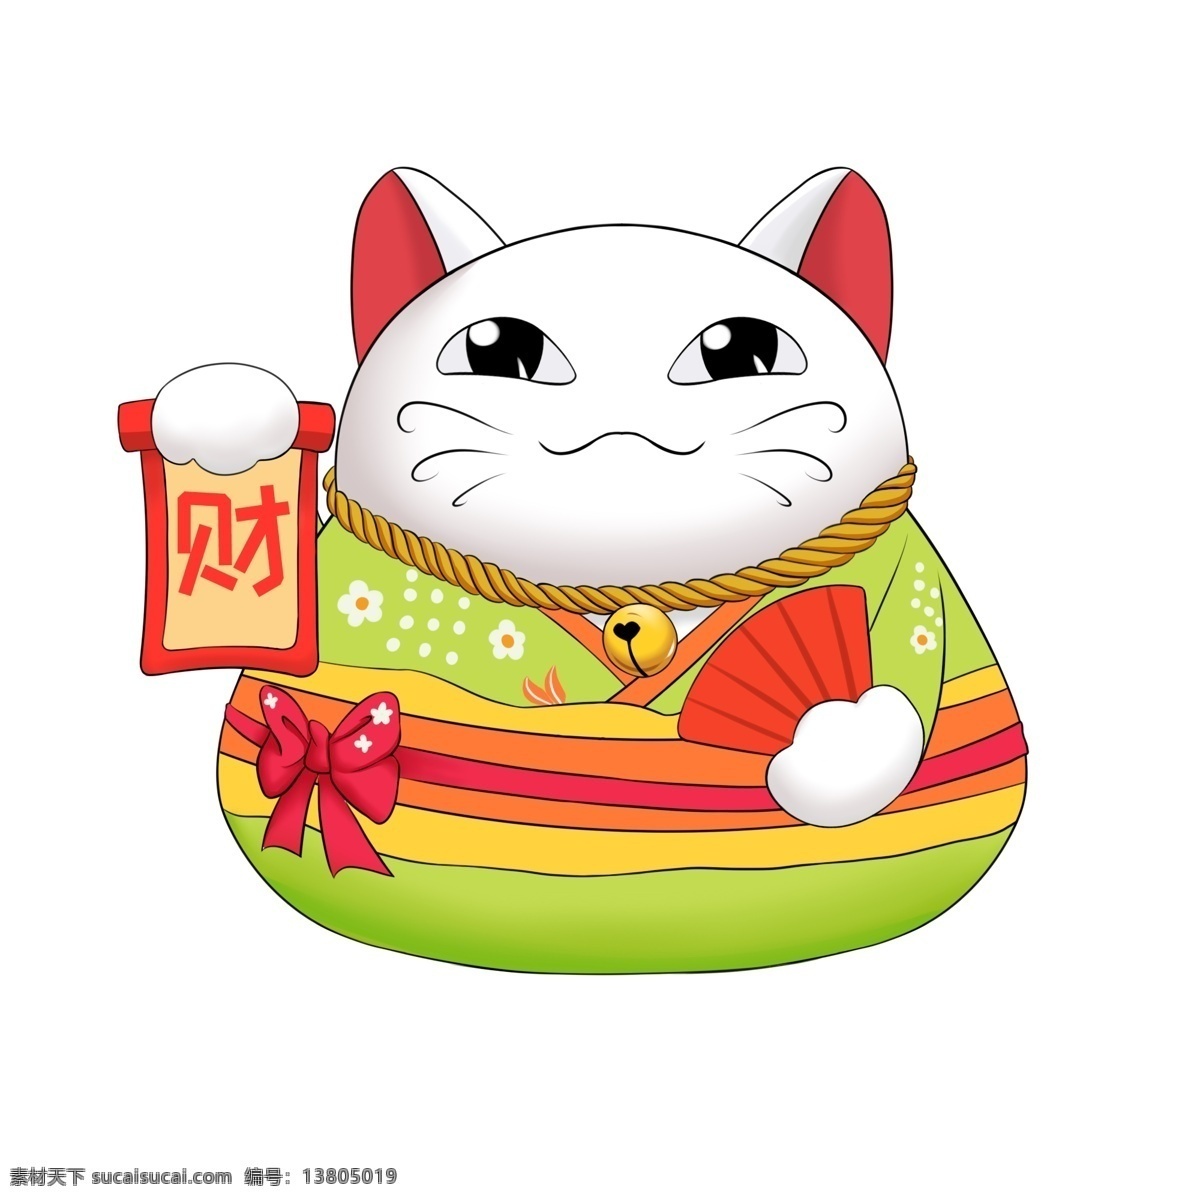 卡通 日本 招 财 猫 插画 日本招财猫 招财猫 绿色的衣服 白色猫咪 创意招财猫 日本插画